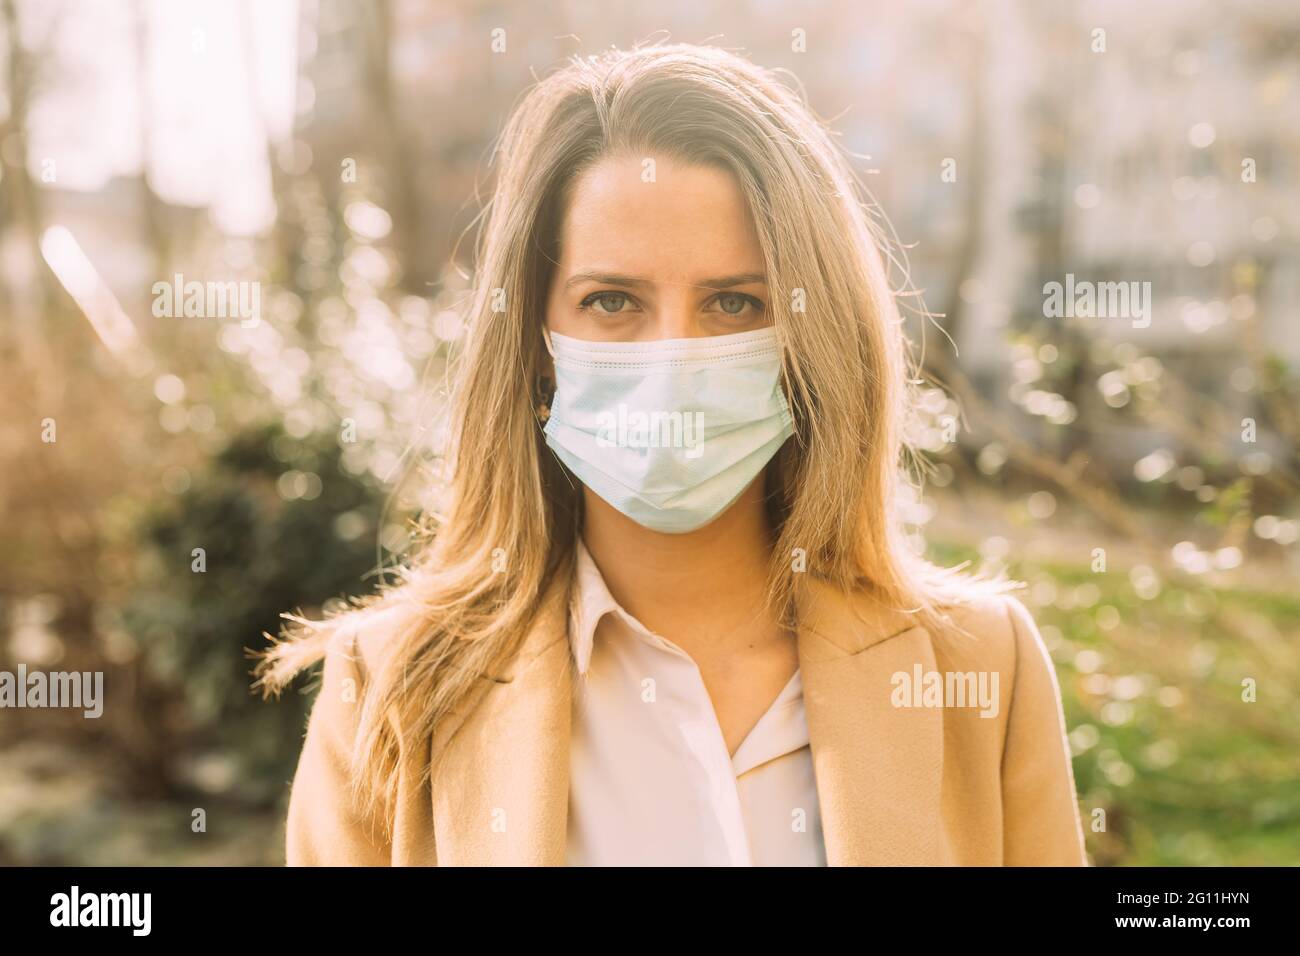 Italia, Ritratto di giovane donna che indossa una maschera protettiva per il viso Foto Stock